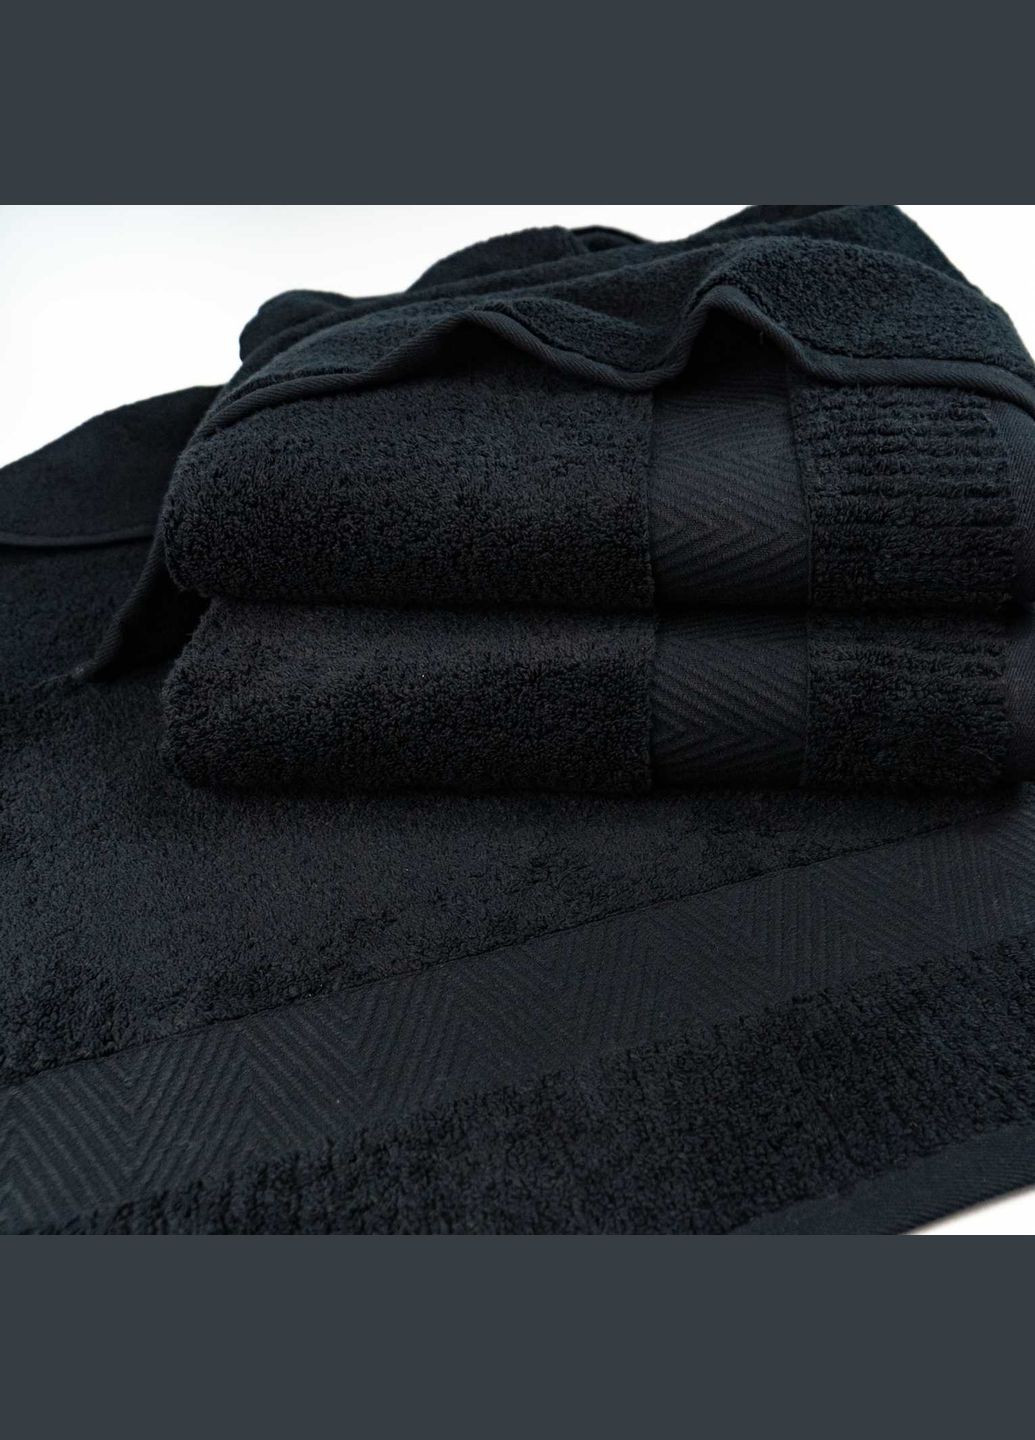 GM Textile махровое полотенце 50x90см премиум качества зеро твист бордюр 550г/м2 () черный производство -